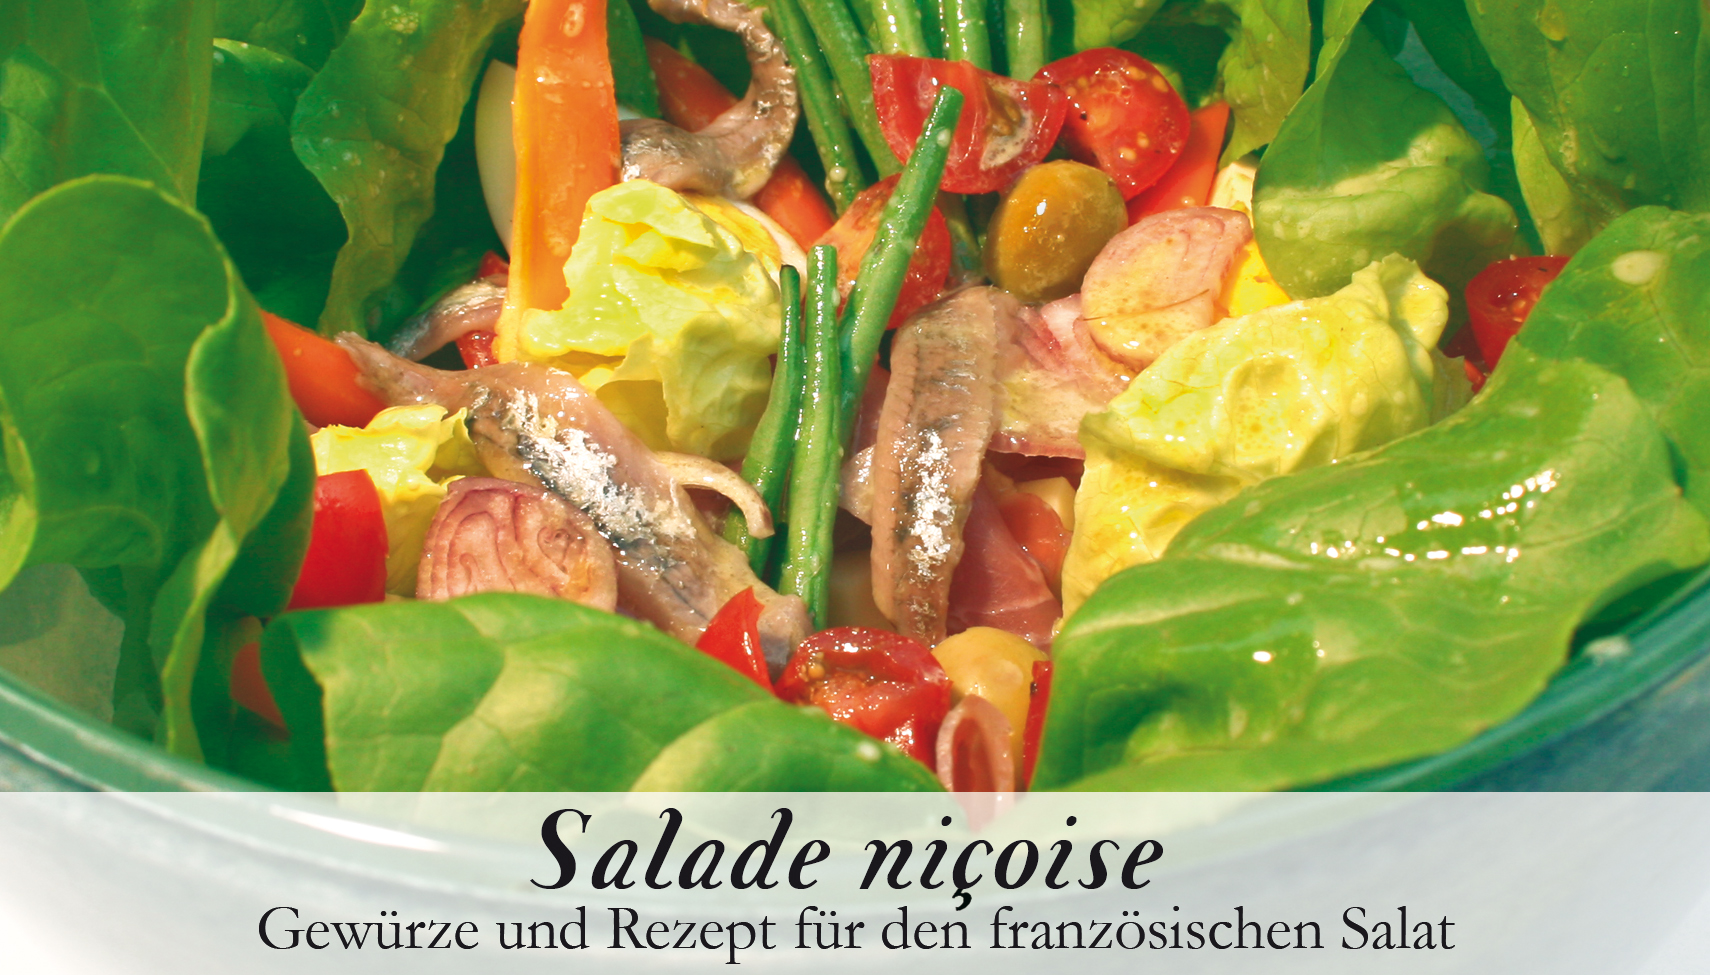 Salade nicoise-Gewürzkasten